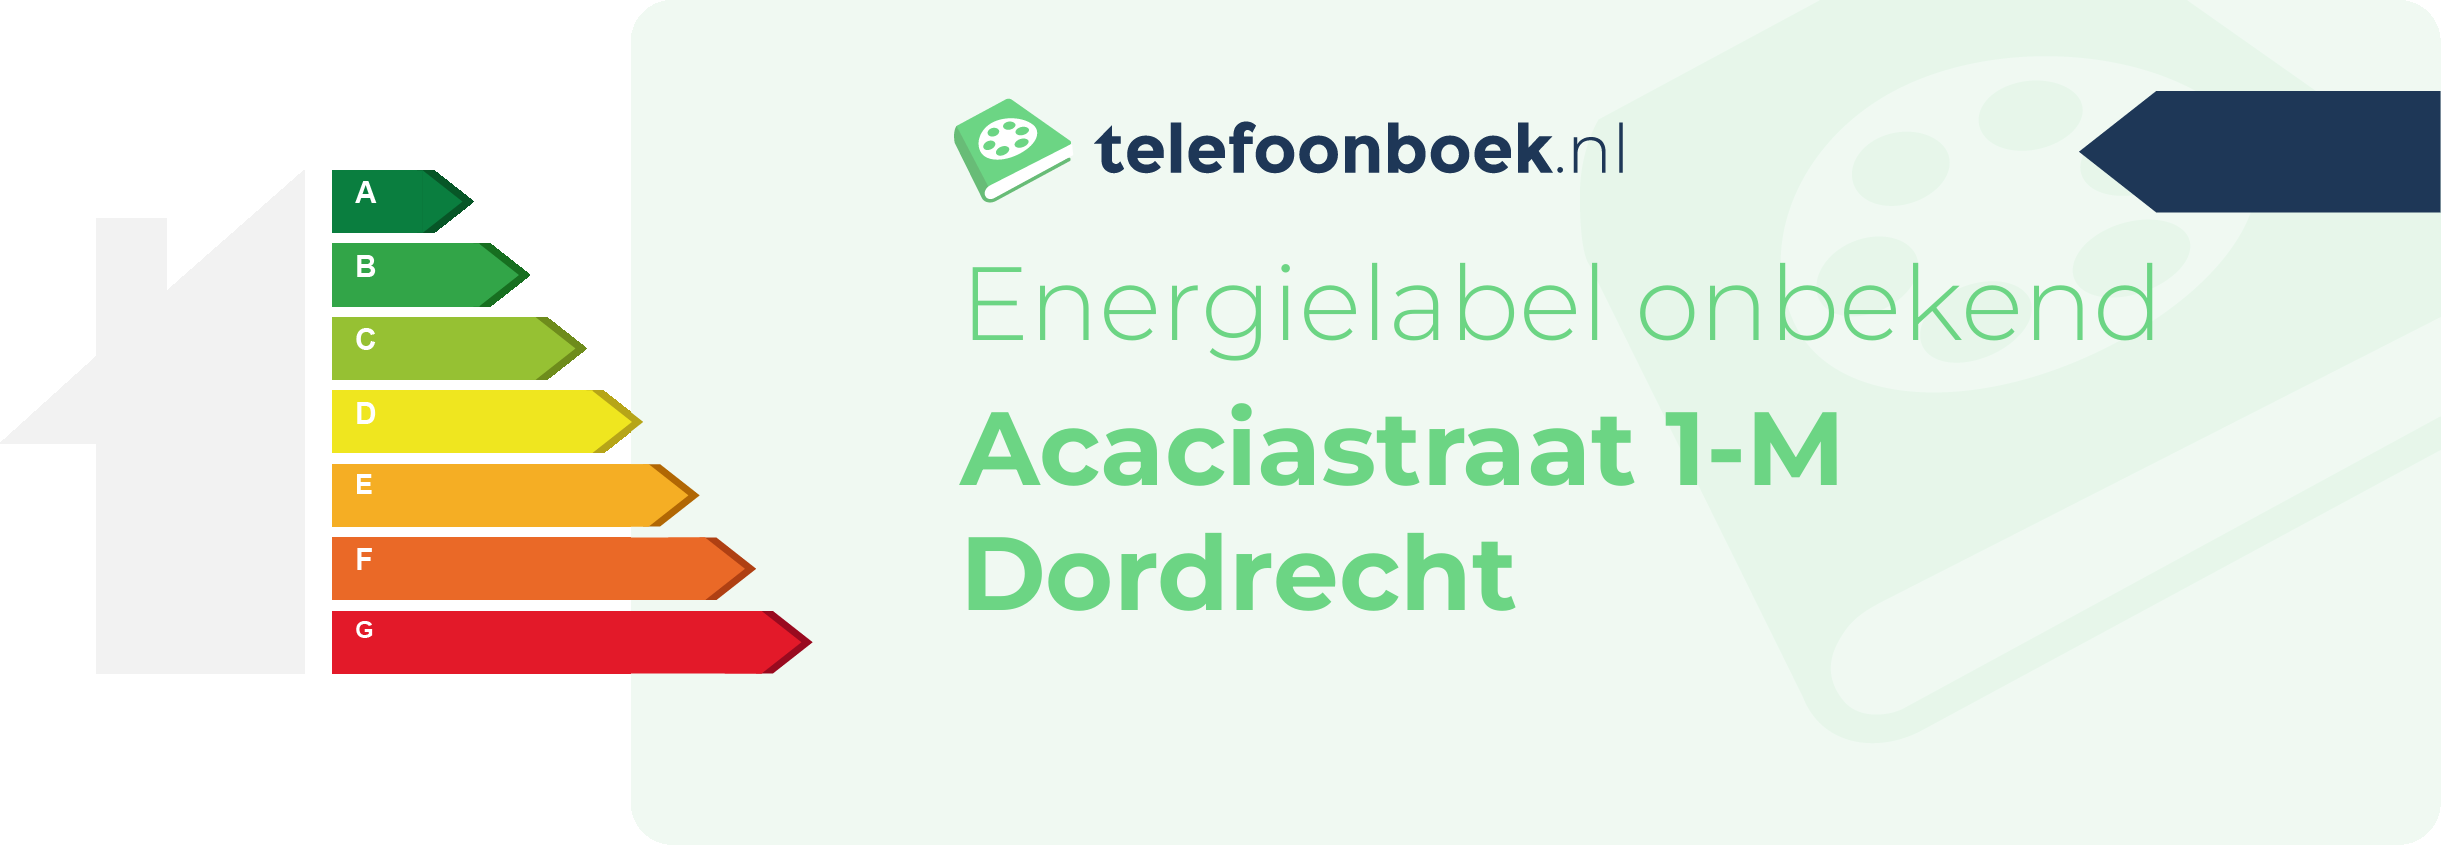 Energielabel Acaciastraat 1-M Dordrecht